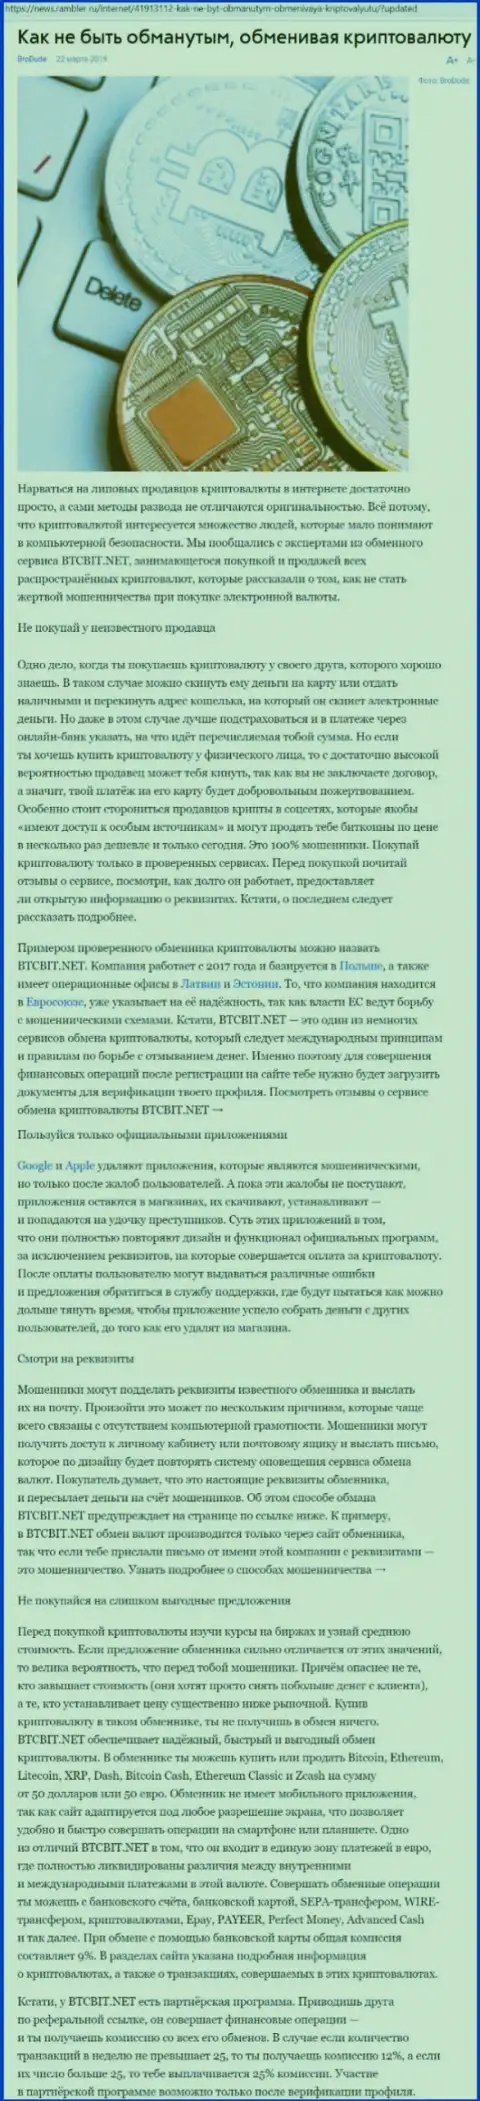 Статья о компании БТЦБИТ Нет на news rambler ru